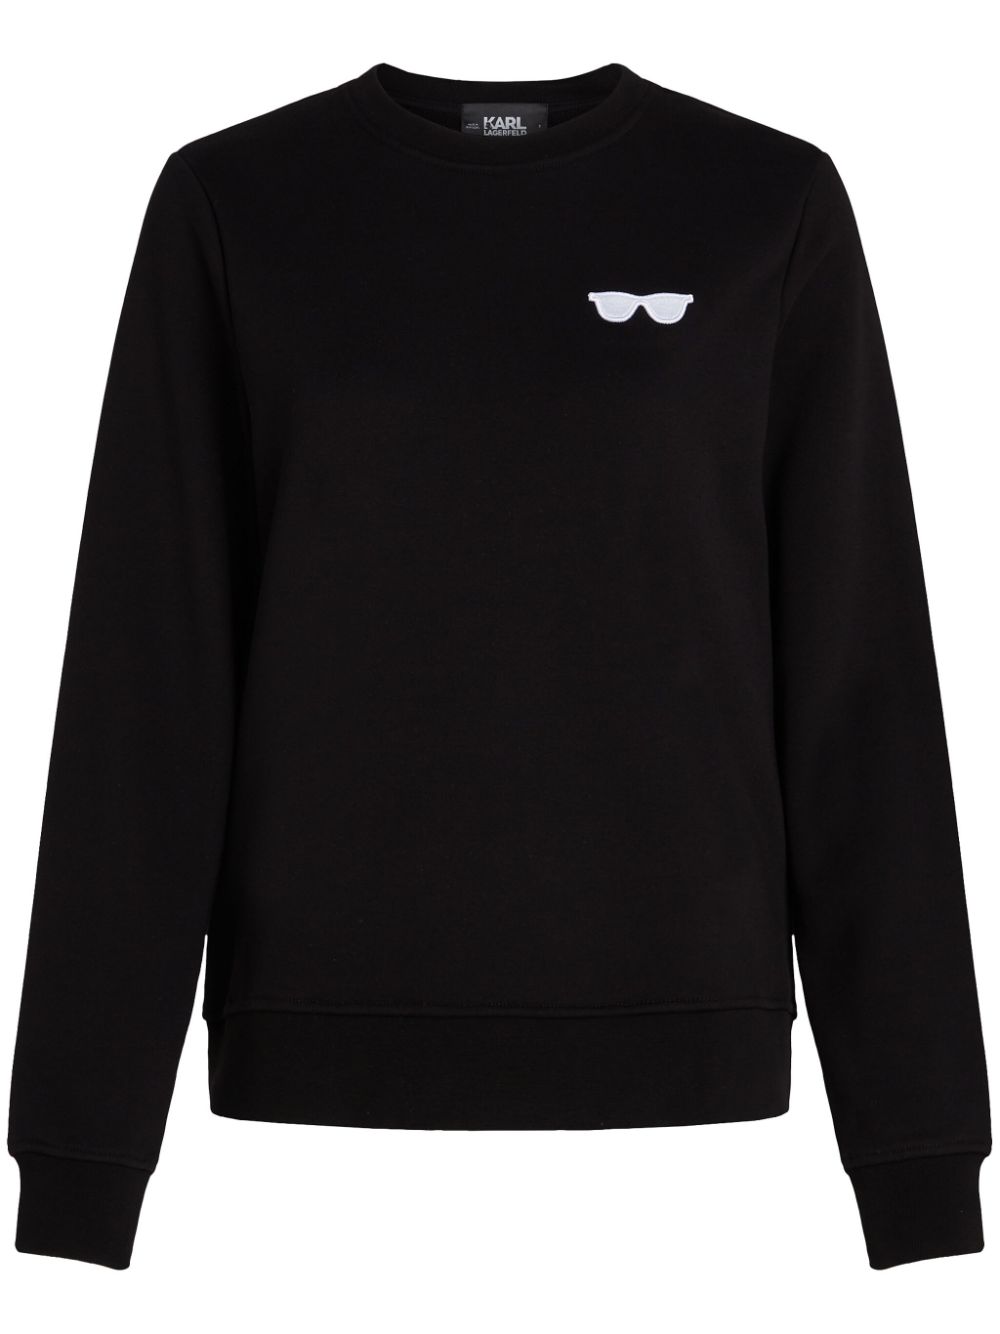 Karl Lagerfeld sunglasses-embroidered organic-cotton sweatshirt - Black von Karl Lagerfeld